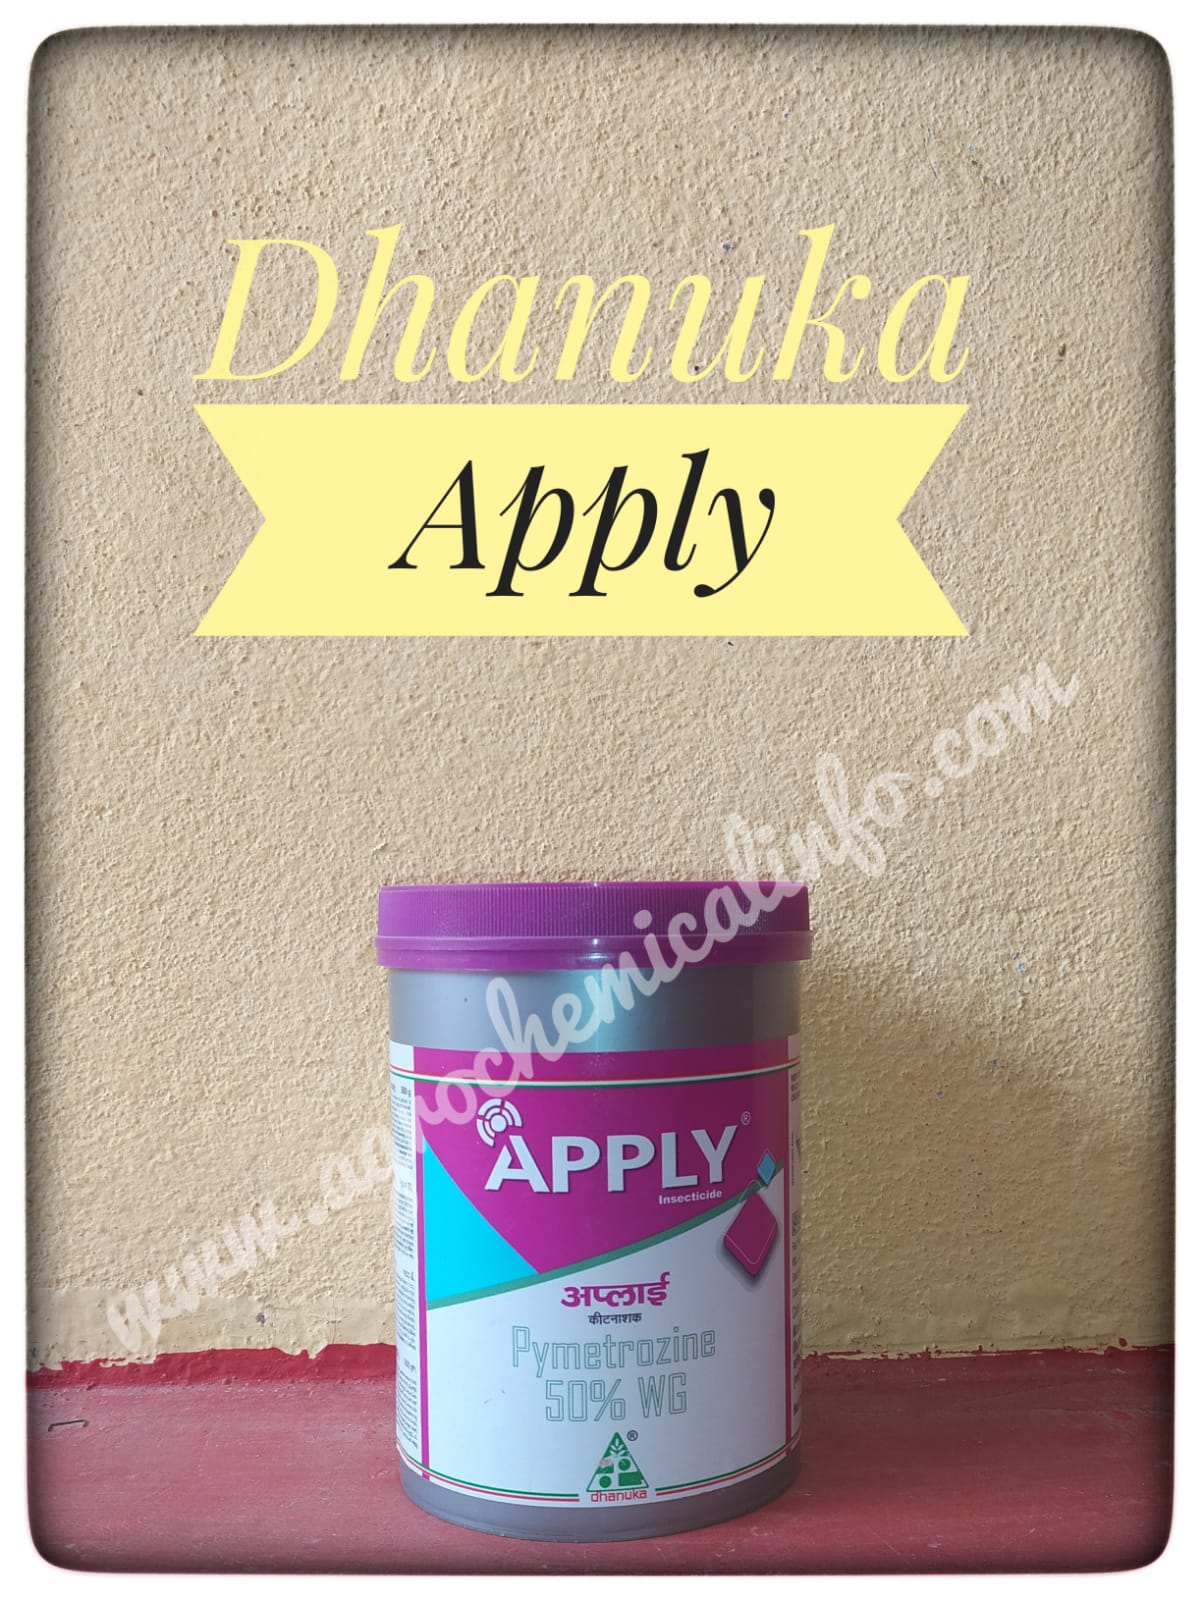 Dhanuka Apply for BPH